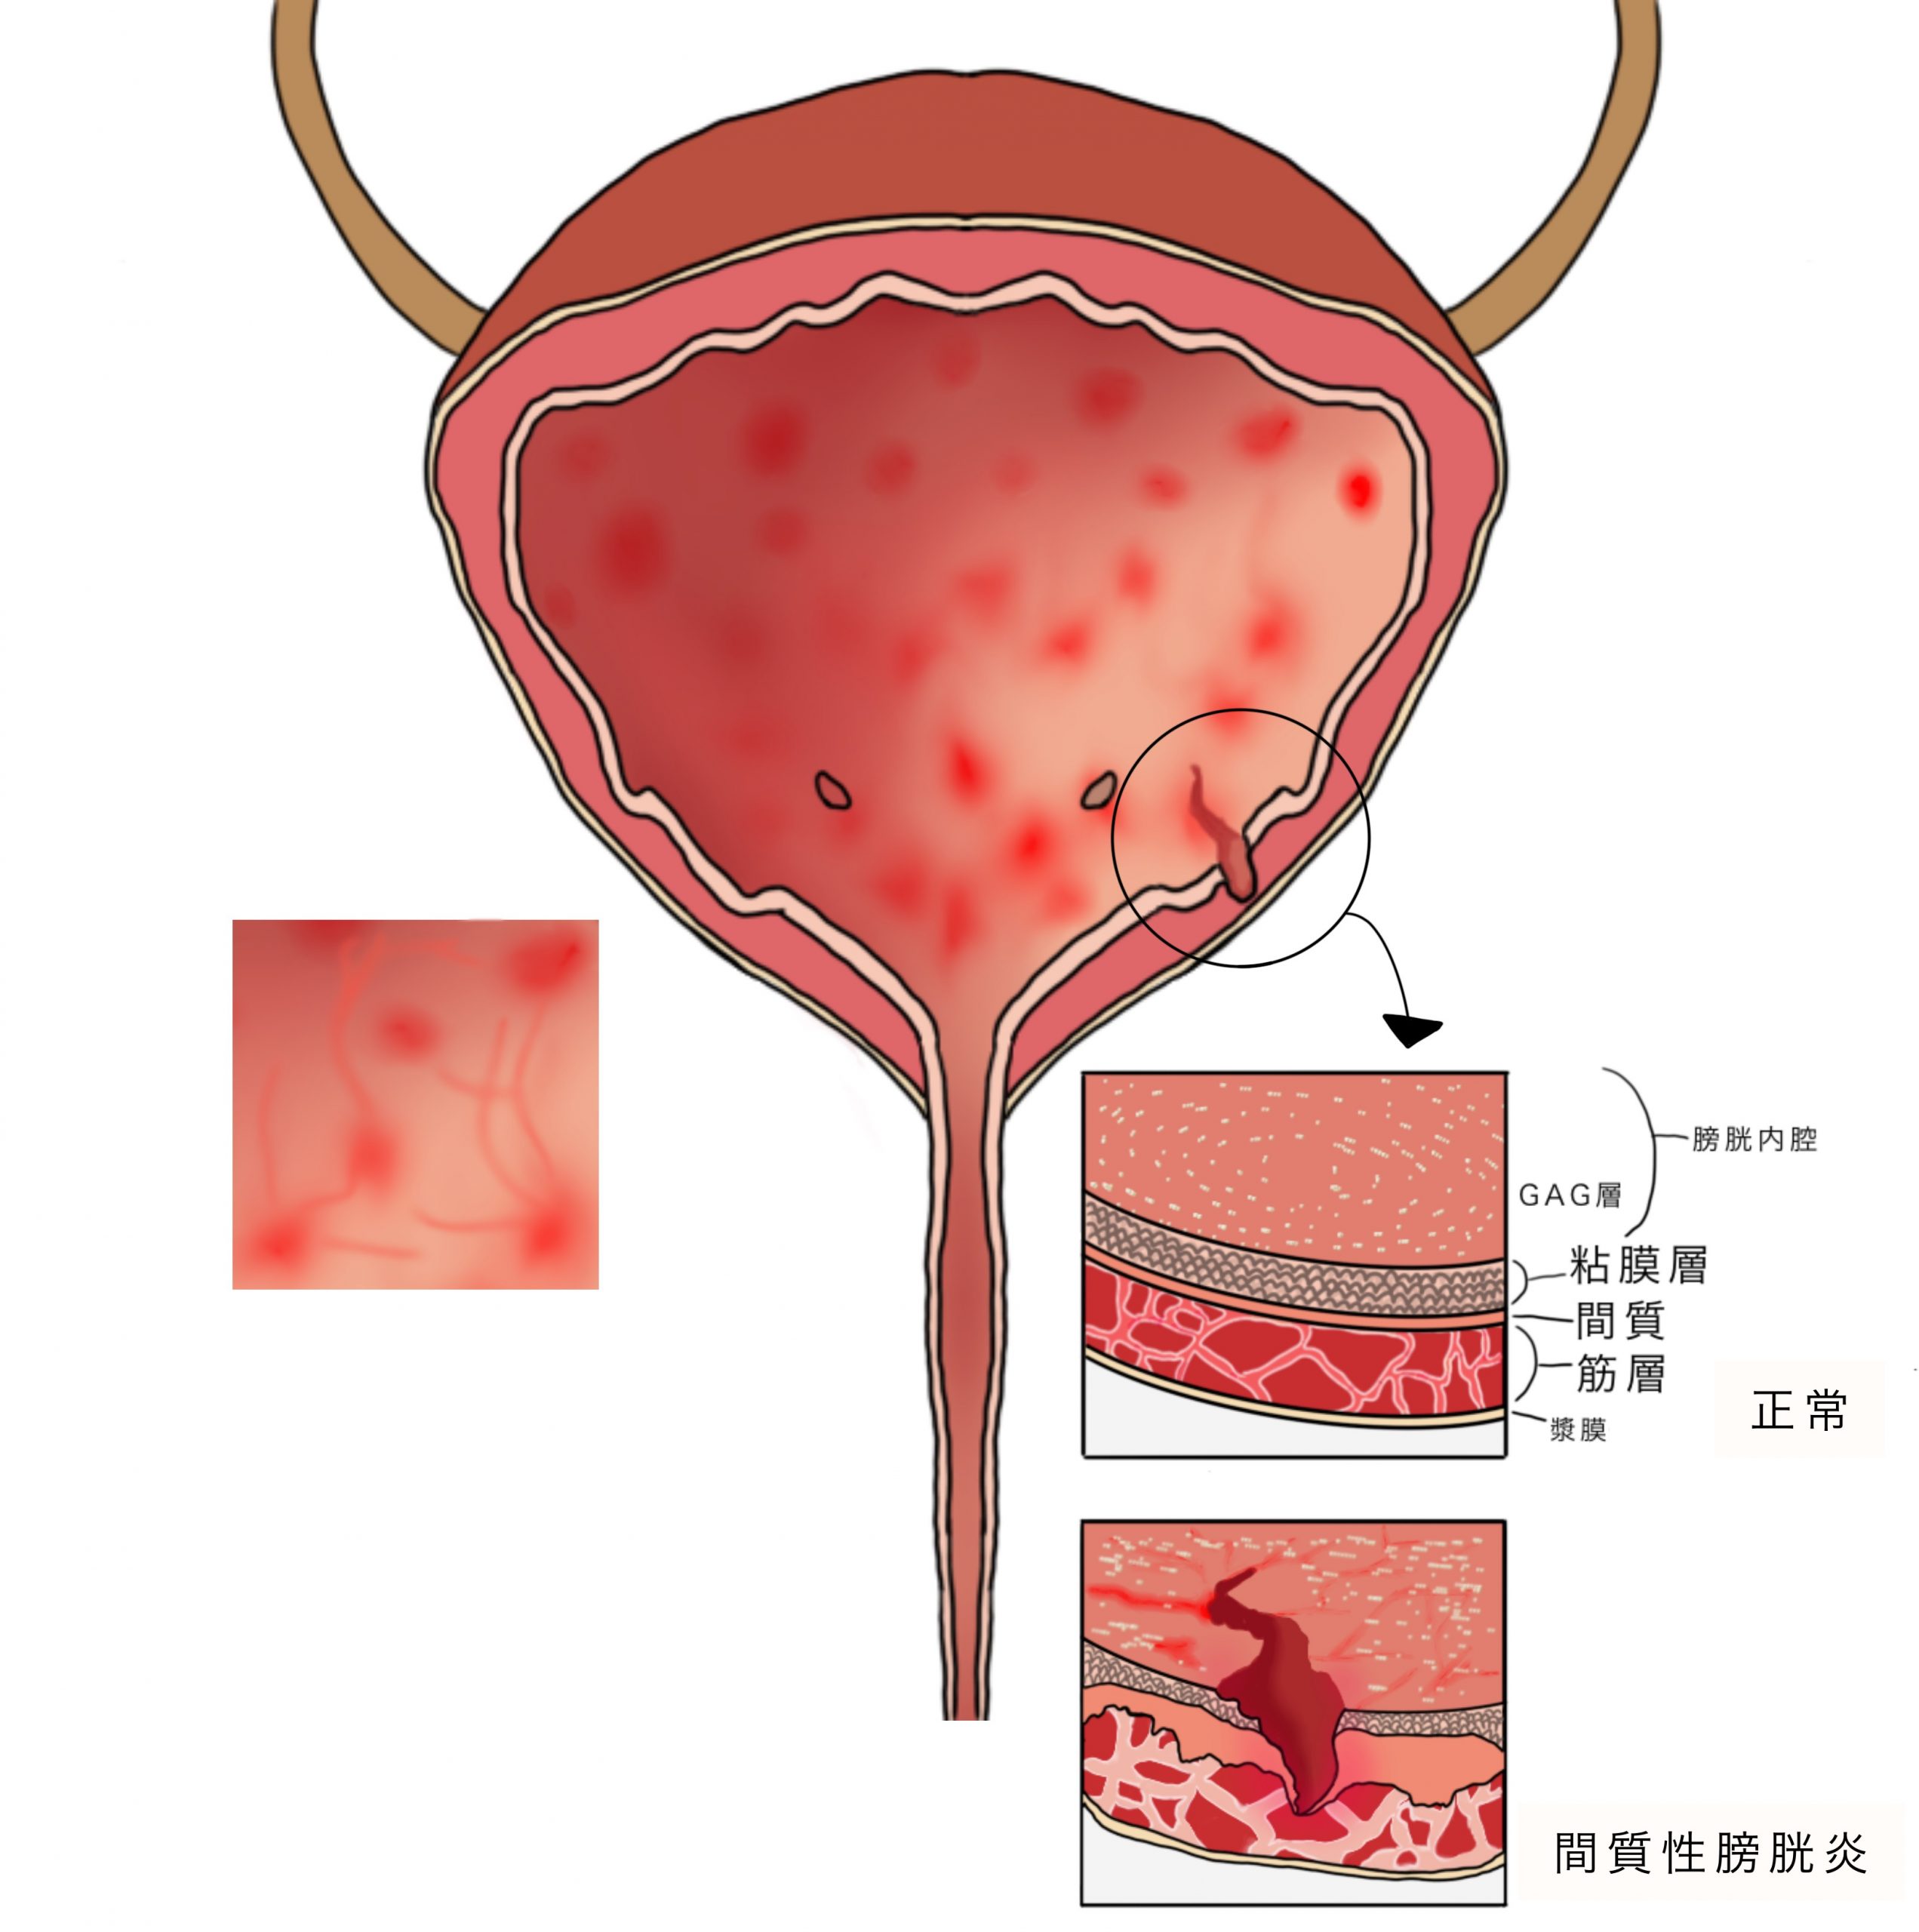 女性に多い膀胱炎の症状と原因、治し方や予防法も解説 | ハルメク美と健康